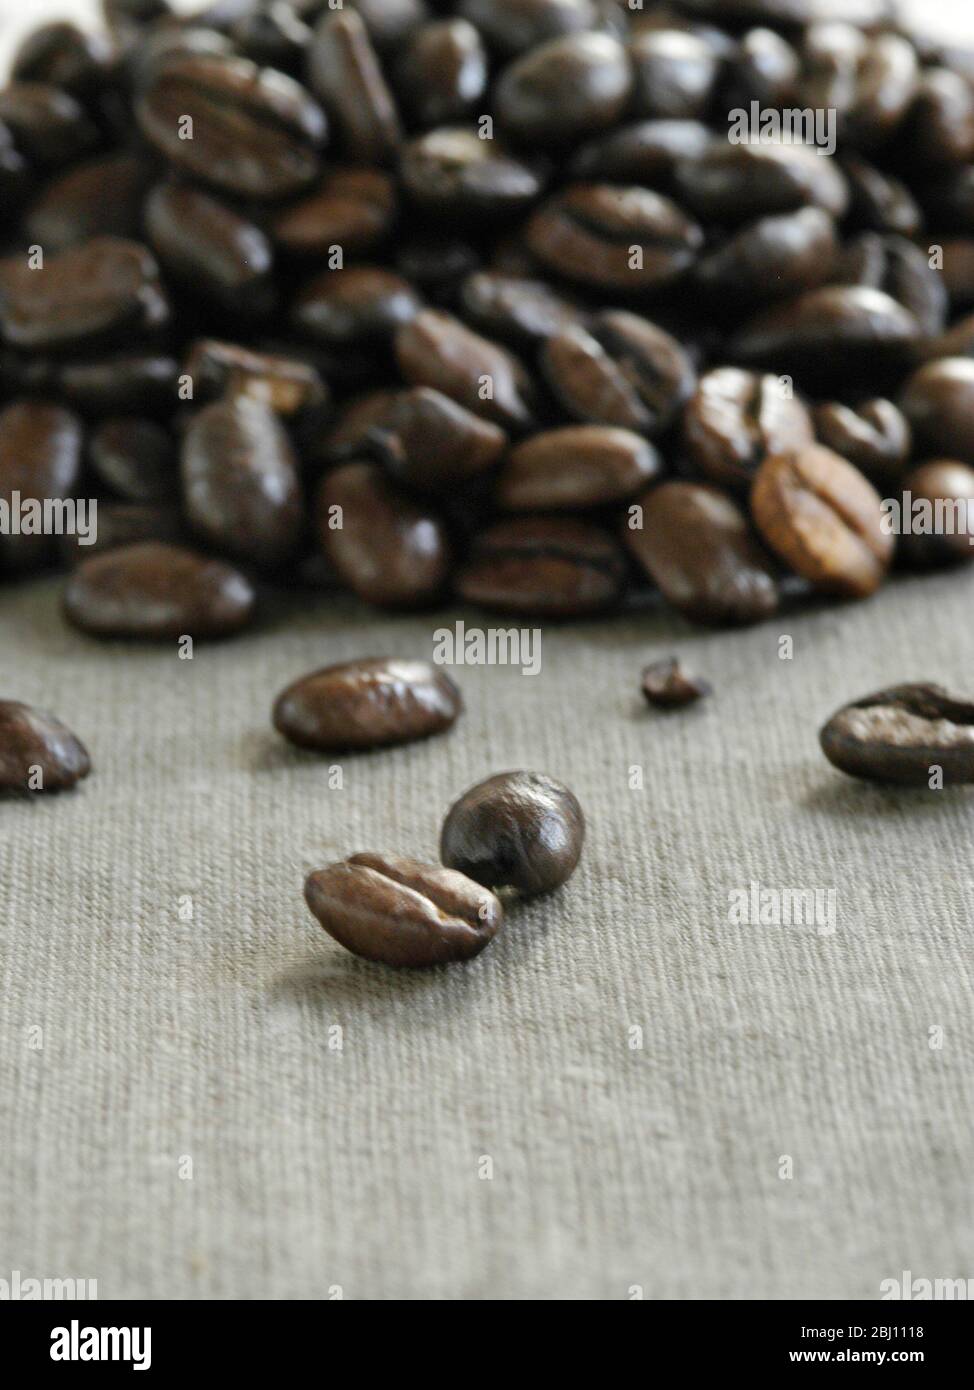 Haufen von dunklen gerösteten Kaffeebohnen auf Leinwand - Stockfoto